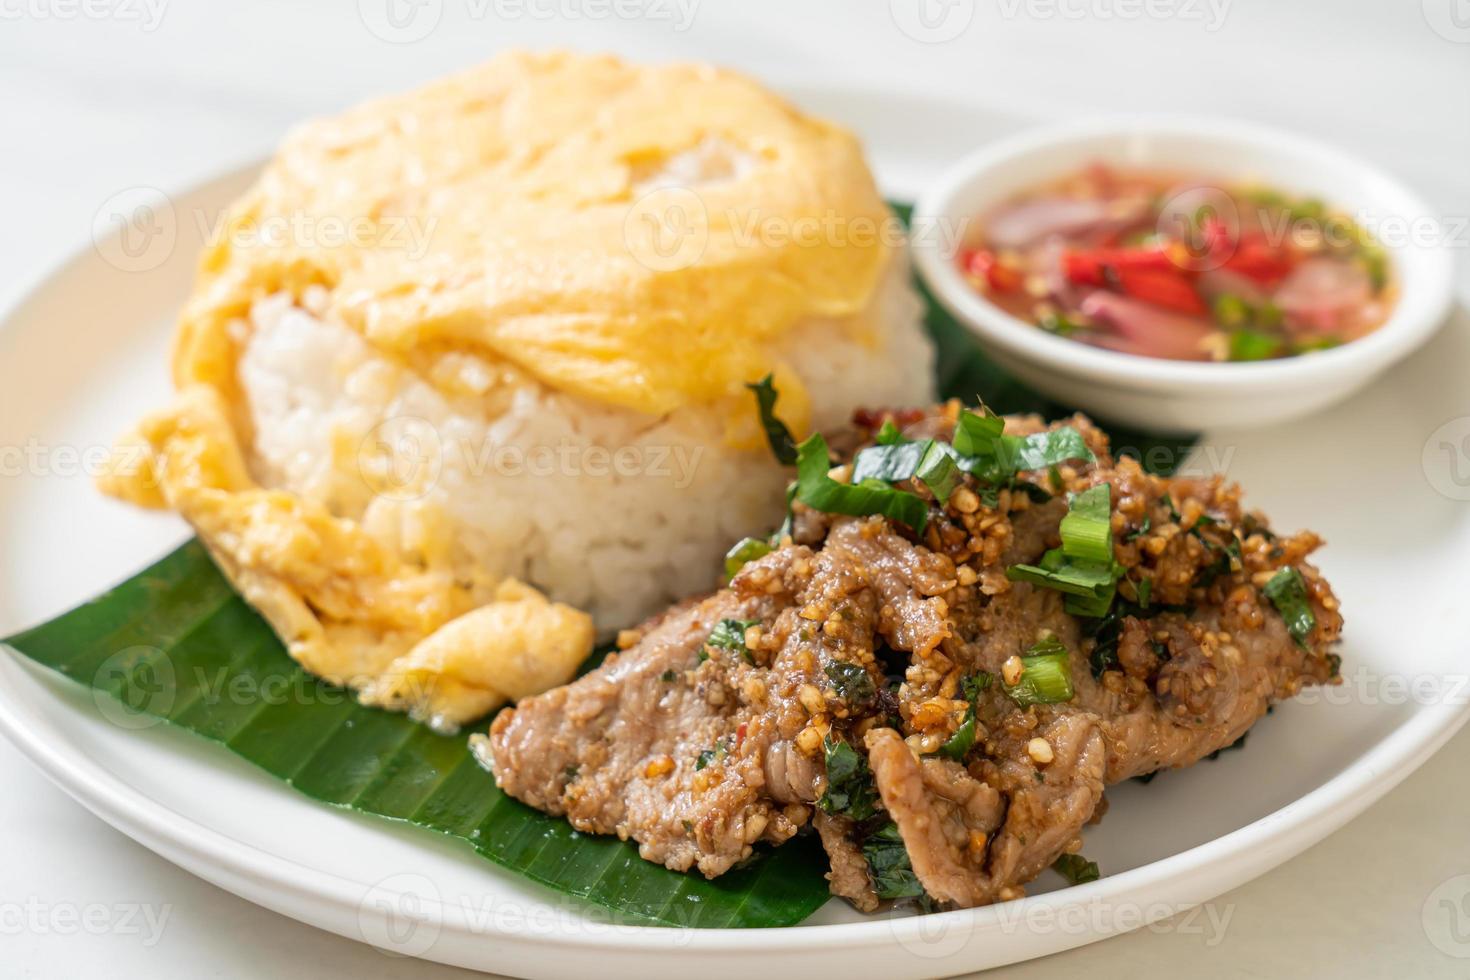 ei op gegarneerde rijst met gegrild varkensvlees en pikante saus - Aziatisch eten foto